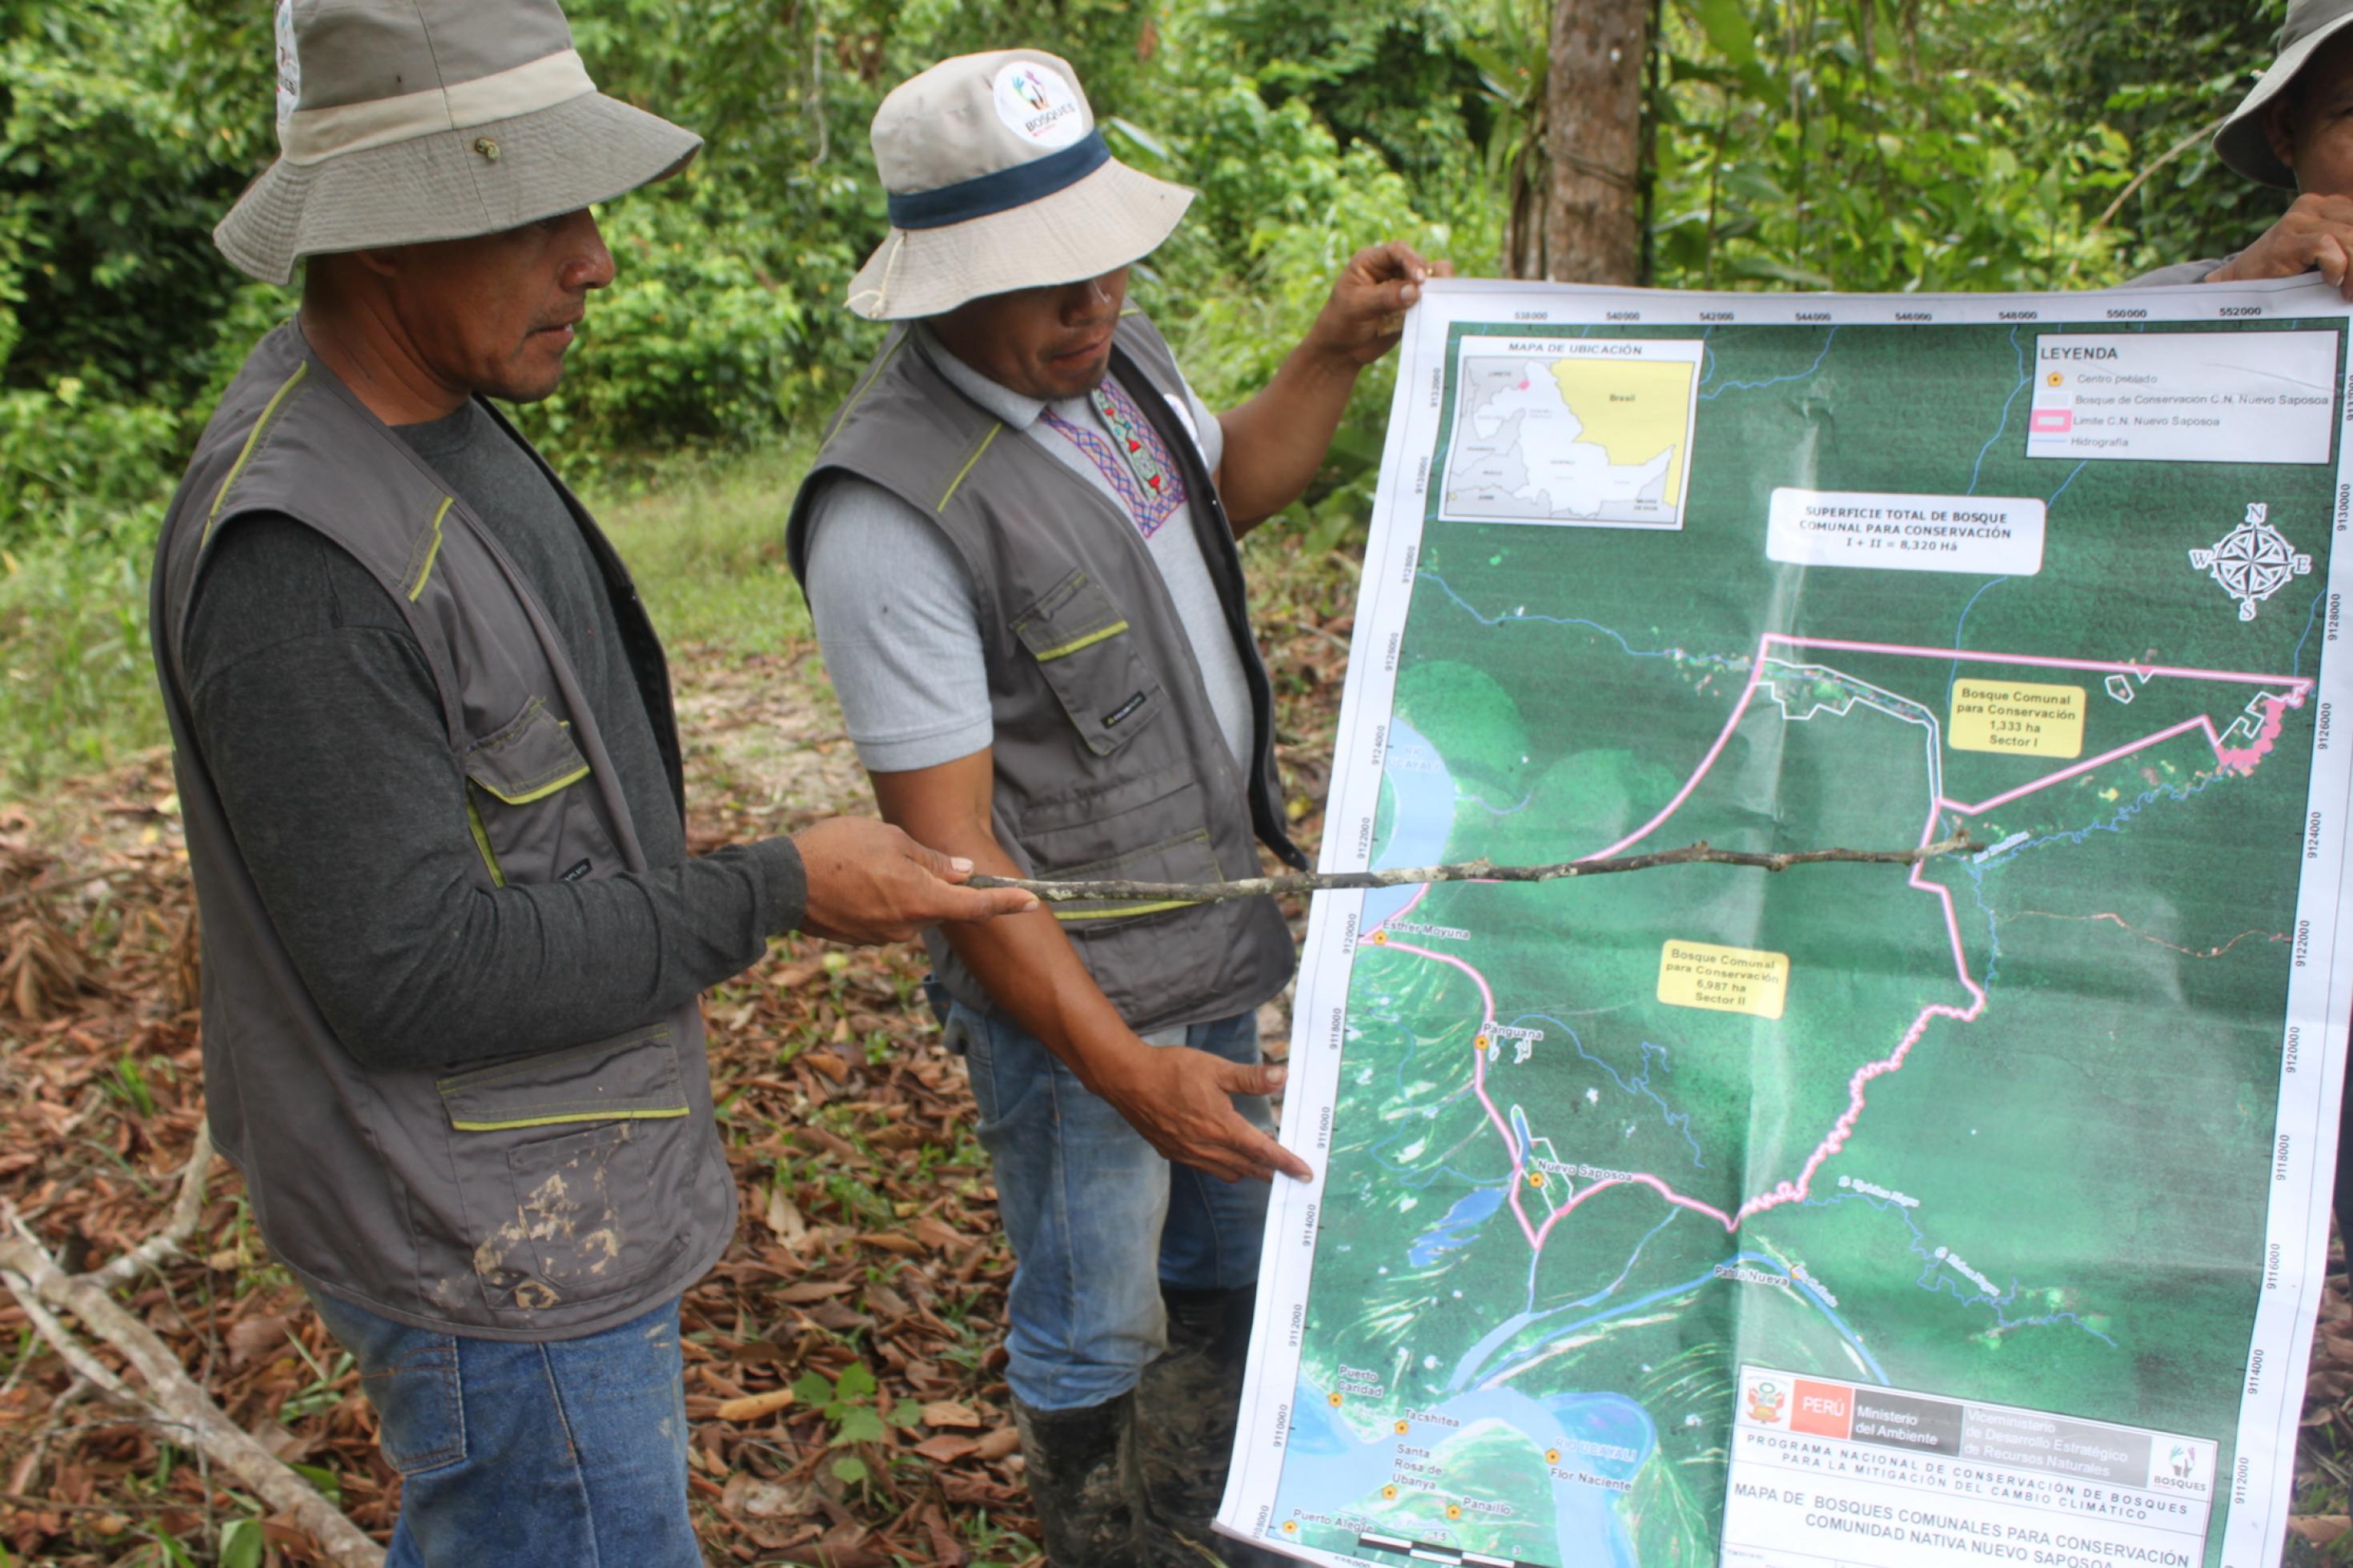 Zwei indigen aussehende Männer mit Trapperhut und Outdoor-Kleidung schauen auf eine grosse Landkarte ihres Gemeindegebietes.